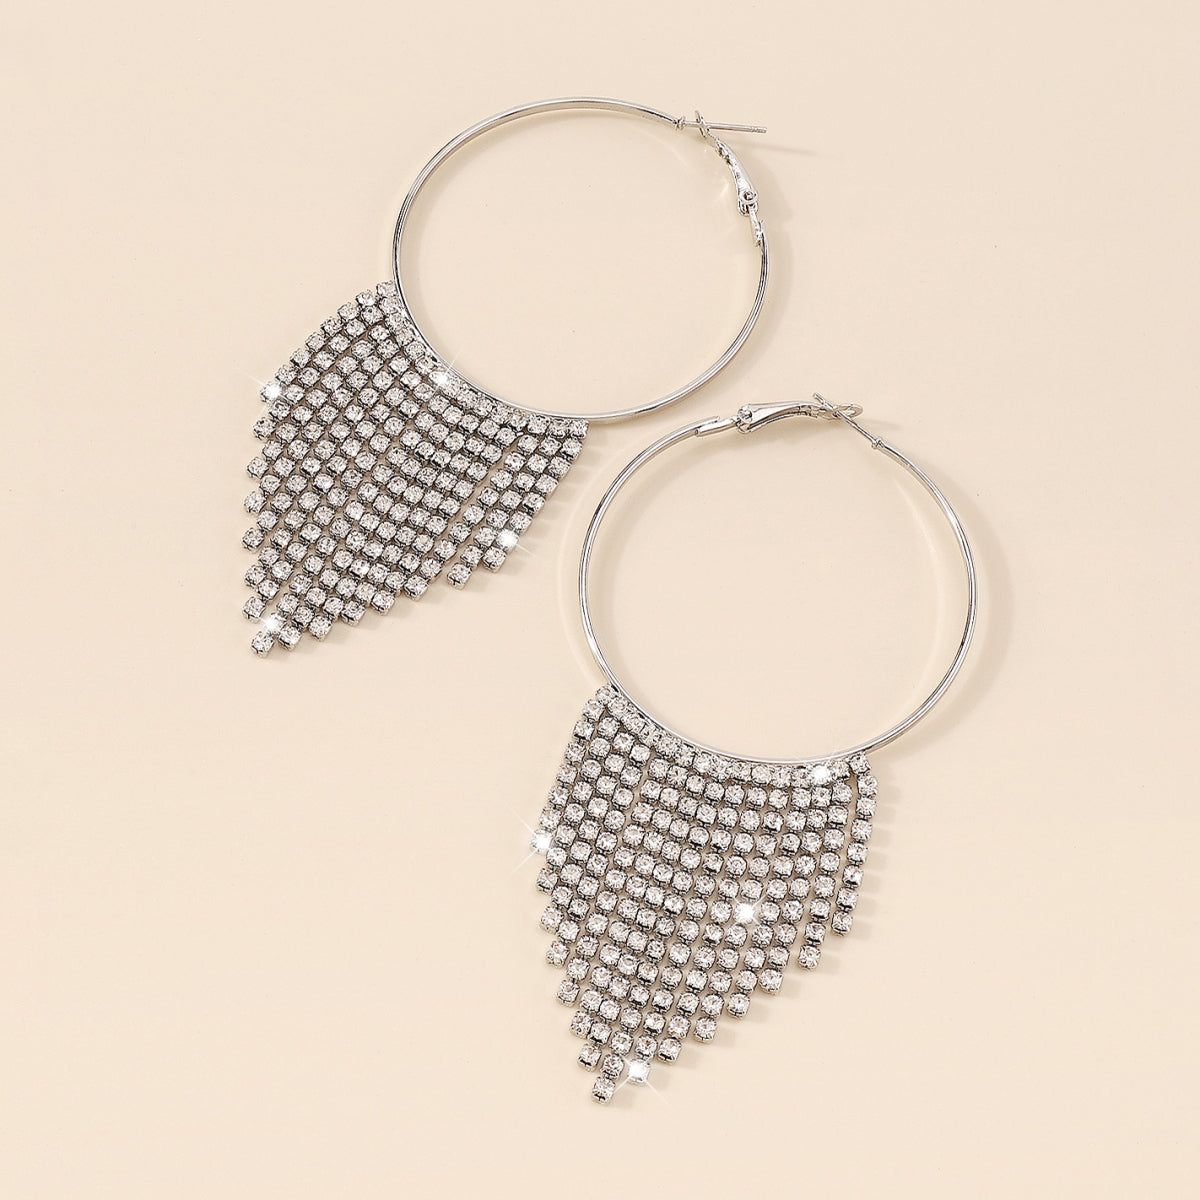 Sparkly Rhinestone Big Round Tassel Hoop Earrings medyjewelry